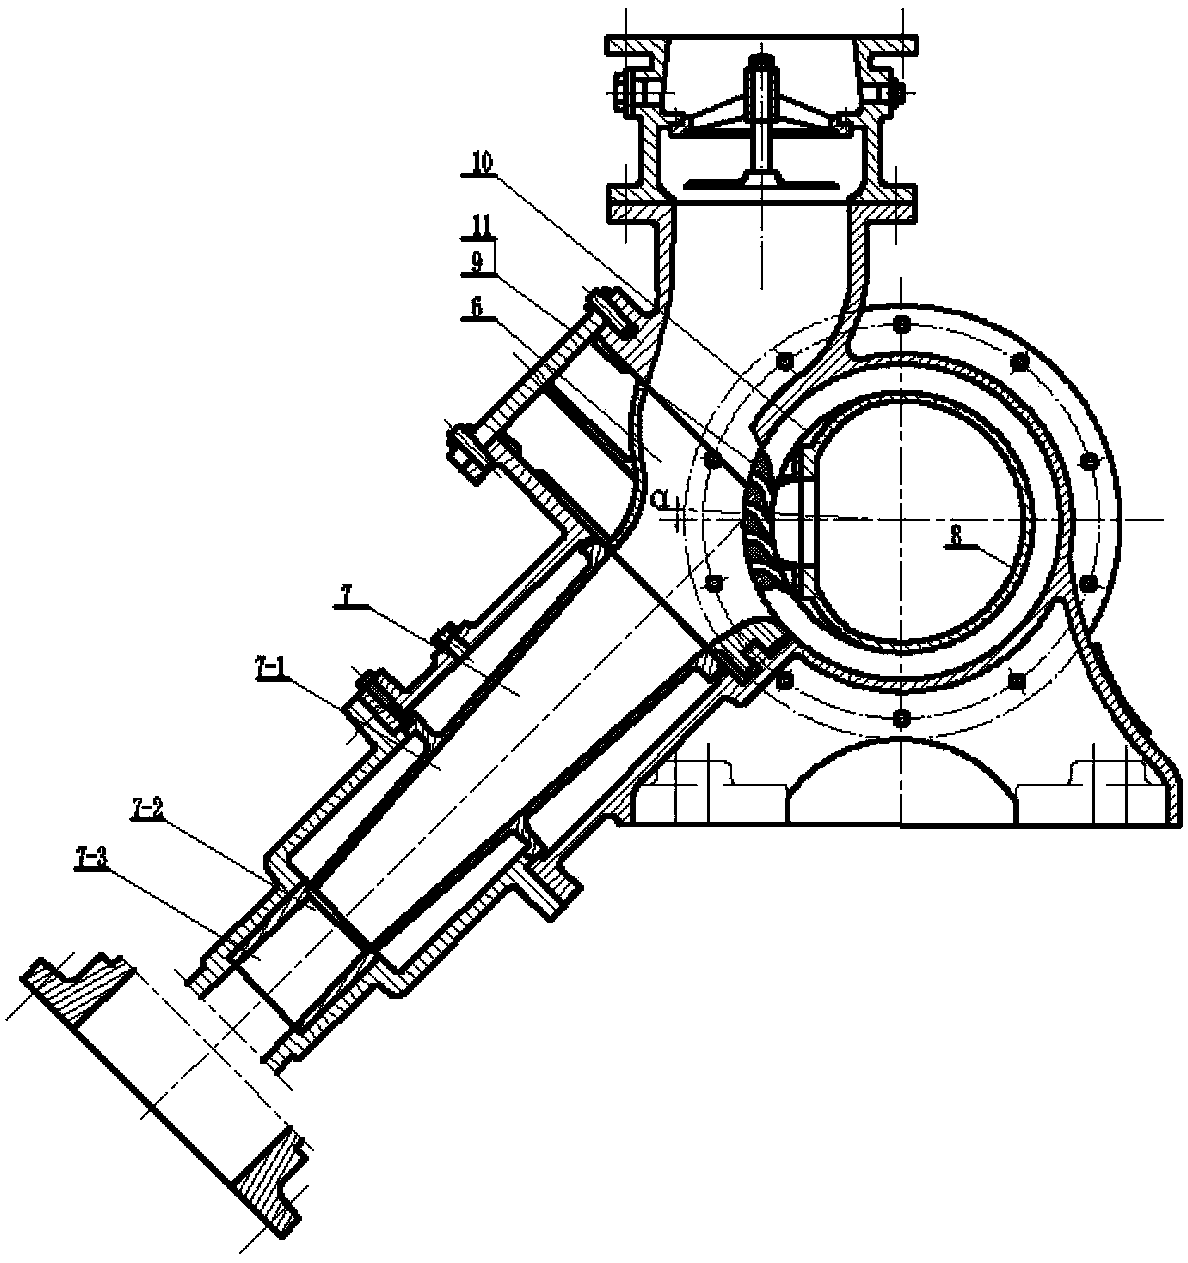 Centrifugal vacuum pump